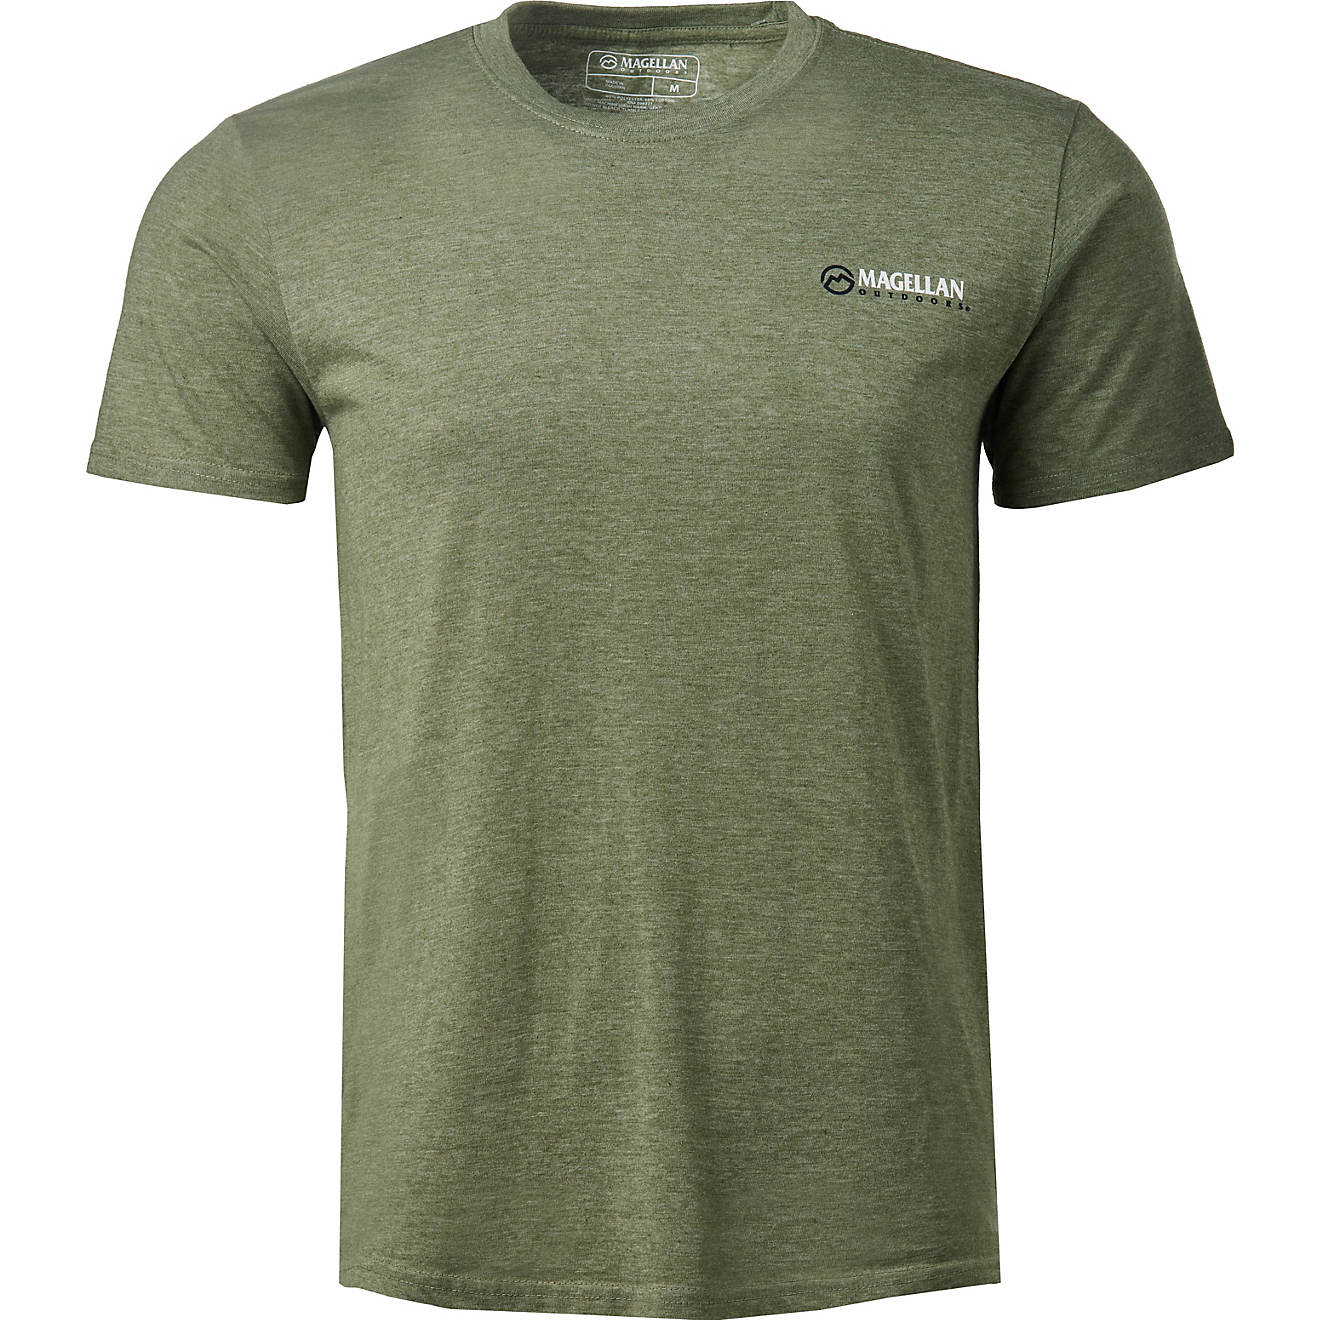 Magellan Outdoors Men's The Great Outdoors Short Sleeve T-shirt | Academy